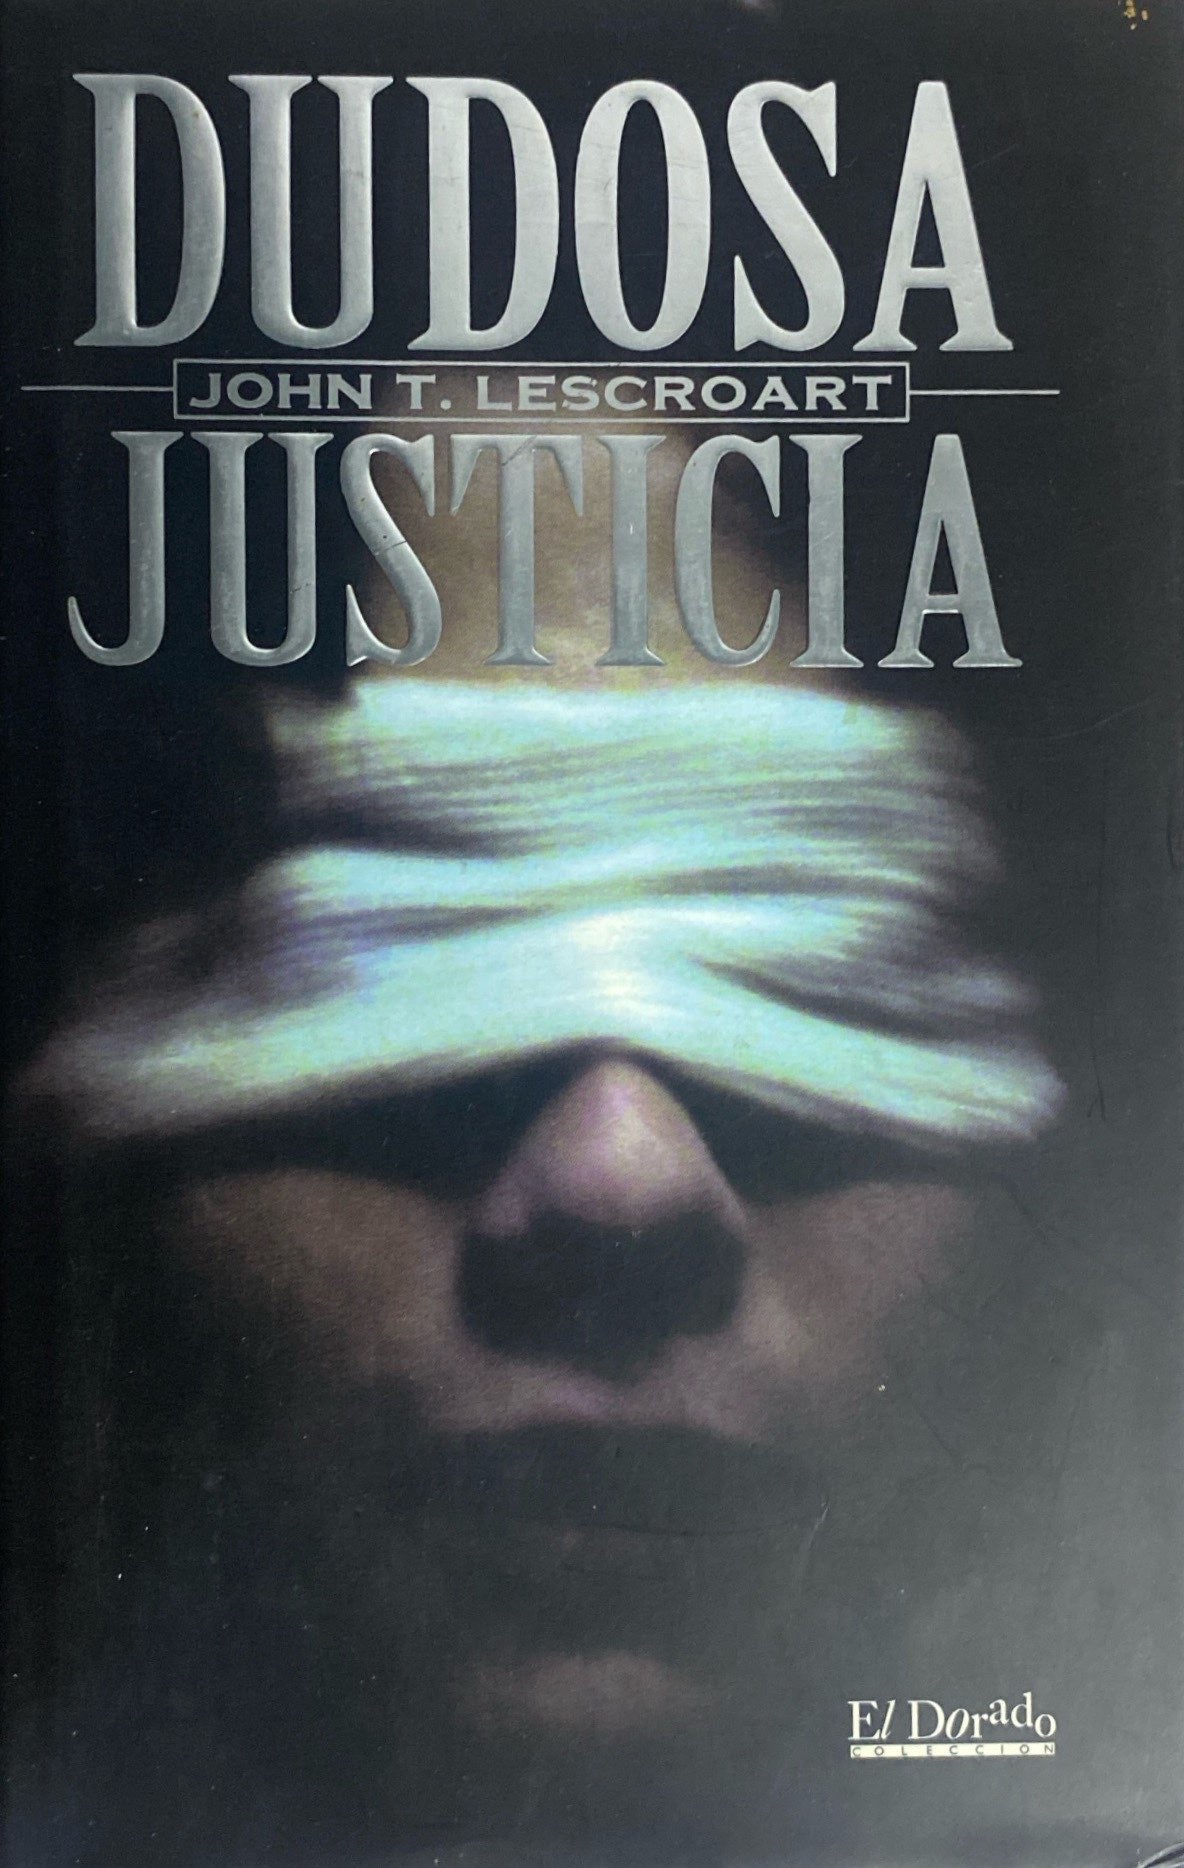 Dudosa justicia | John Lescroart